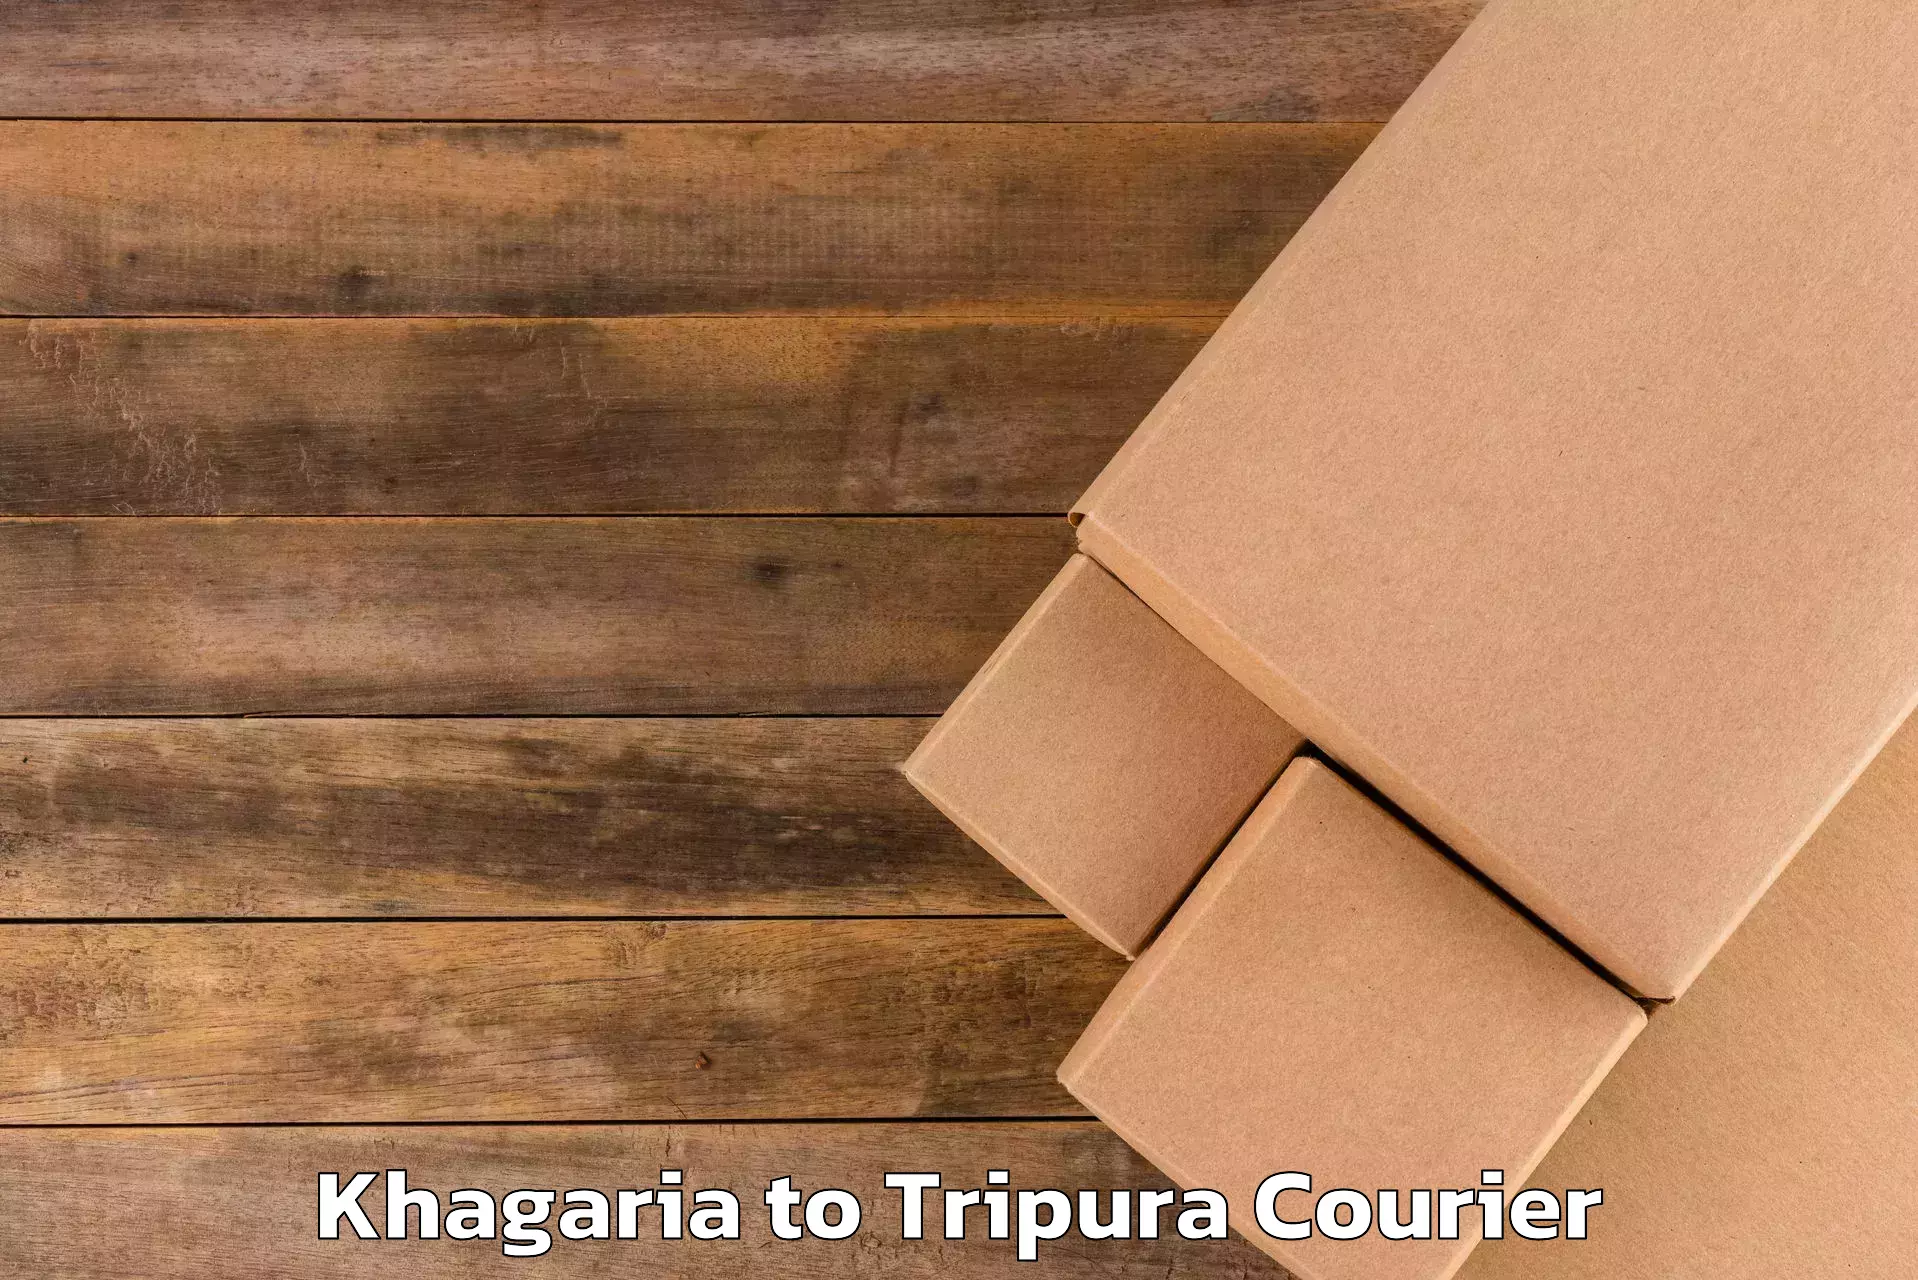 Luggage shipment processing Khagaria to Dharmanagar